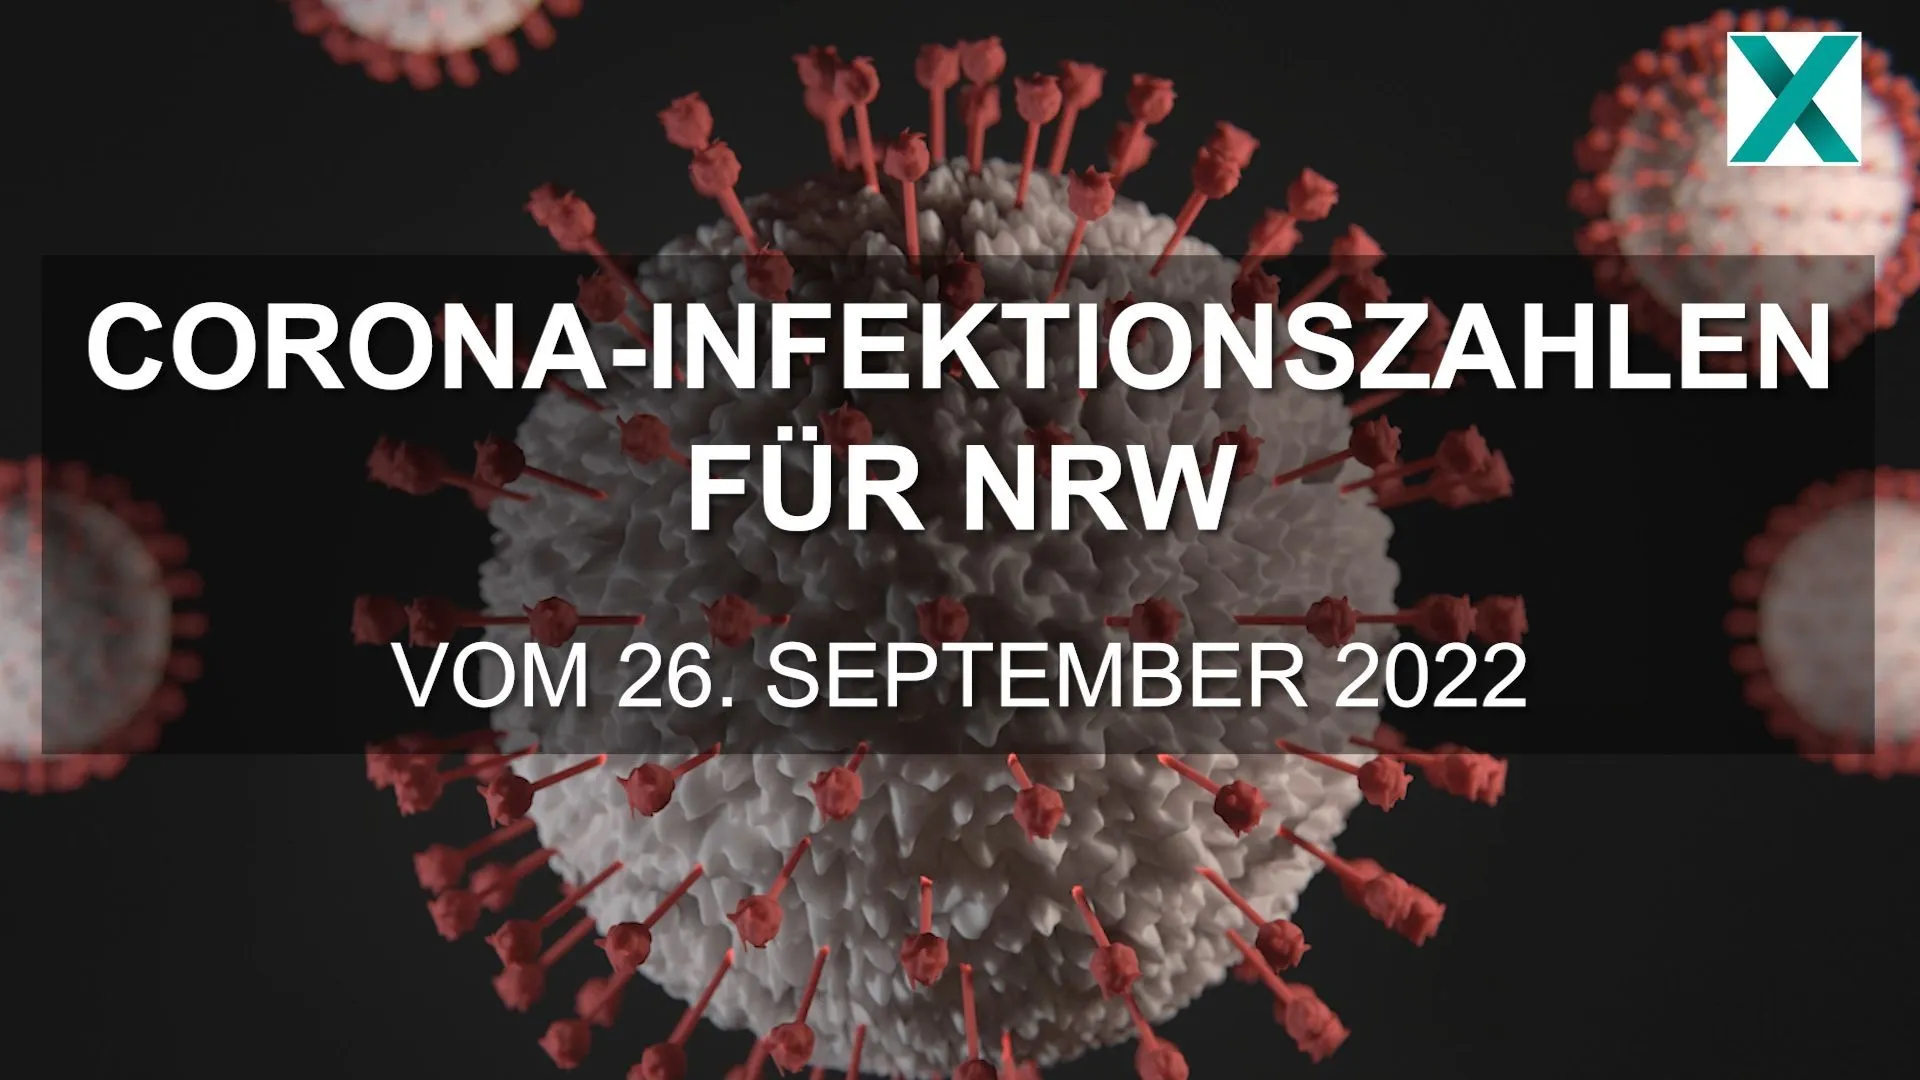 Corona-Infektionszahlen für NRW vom 26.09.2022